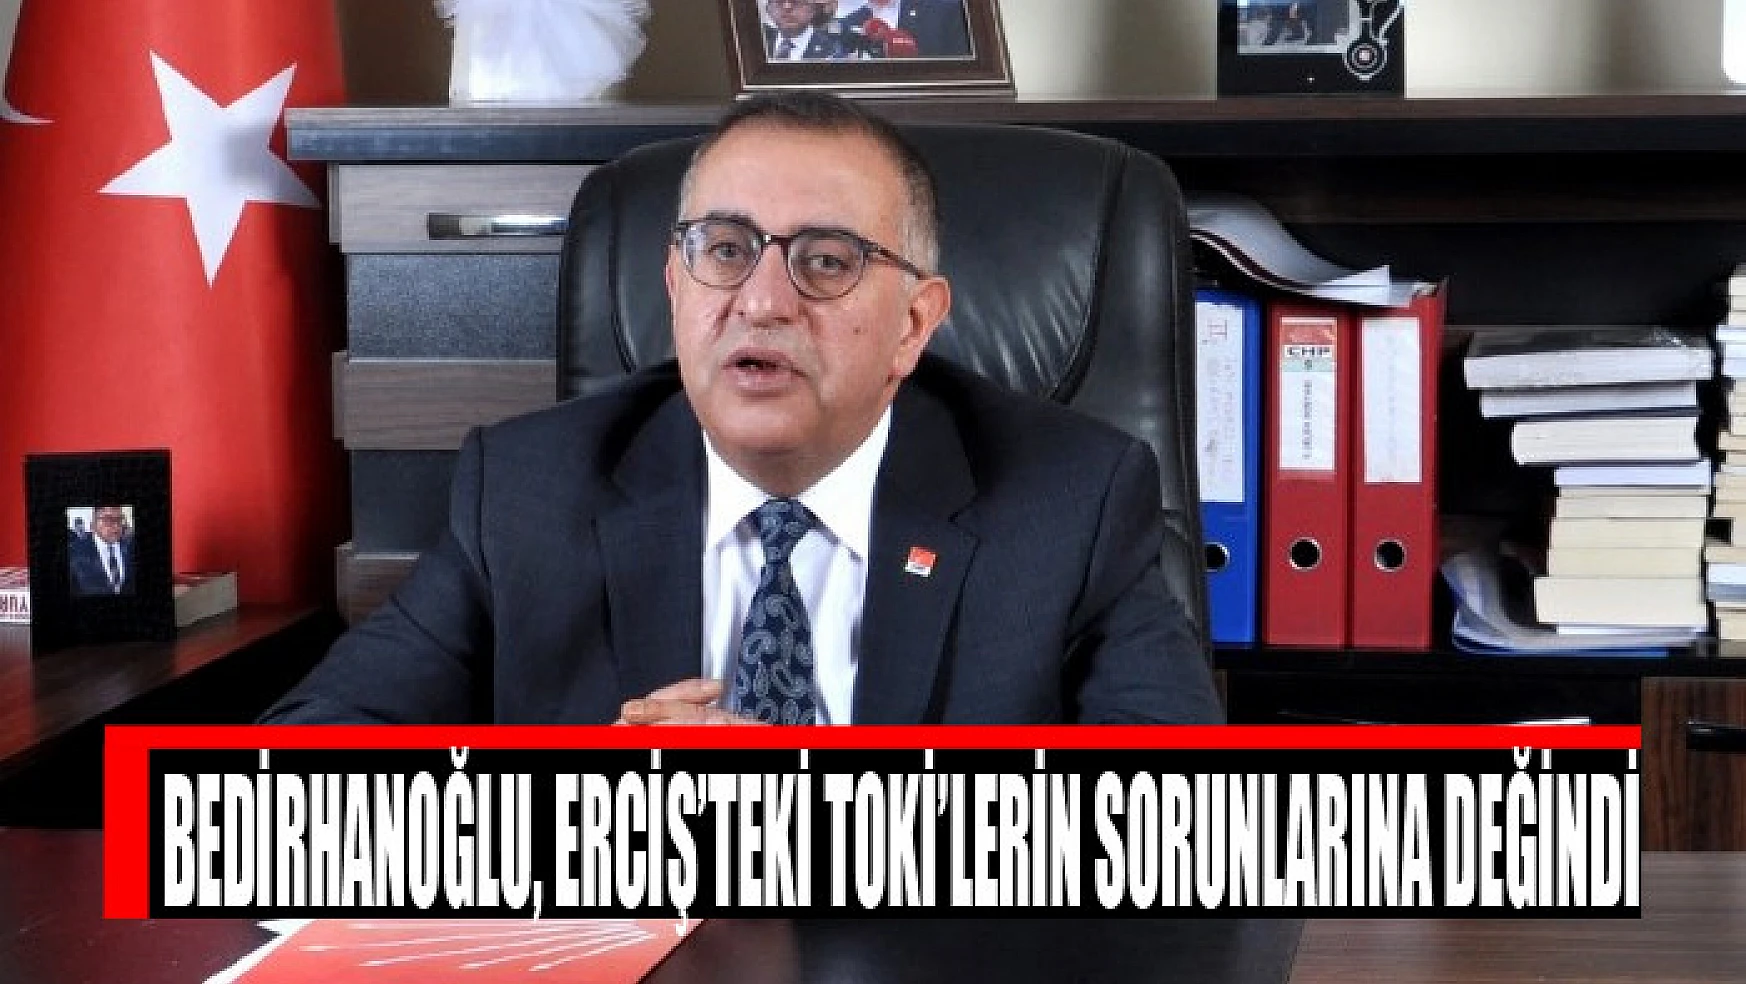 Bedirhanoğlu, Erciş'teki TOKİ'lerin sorunlarına değindi